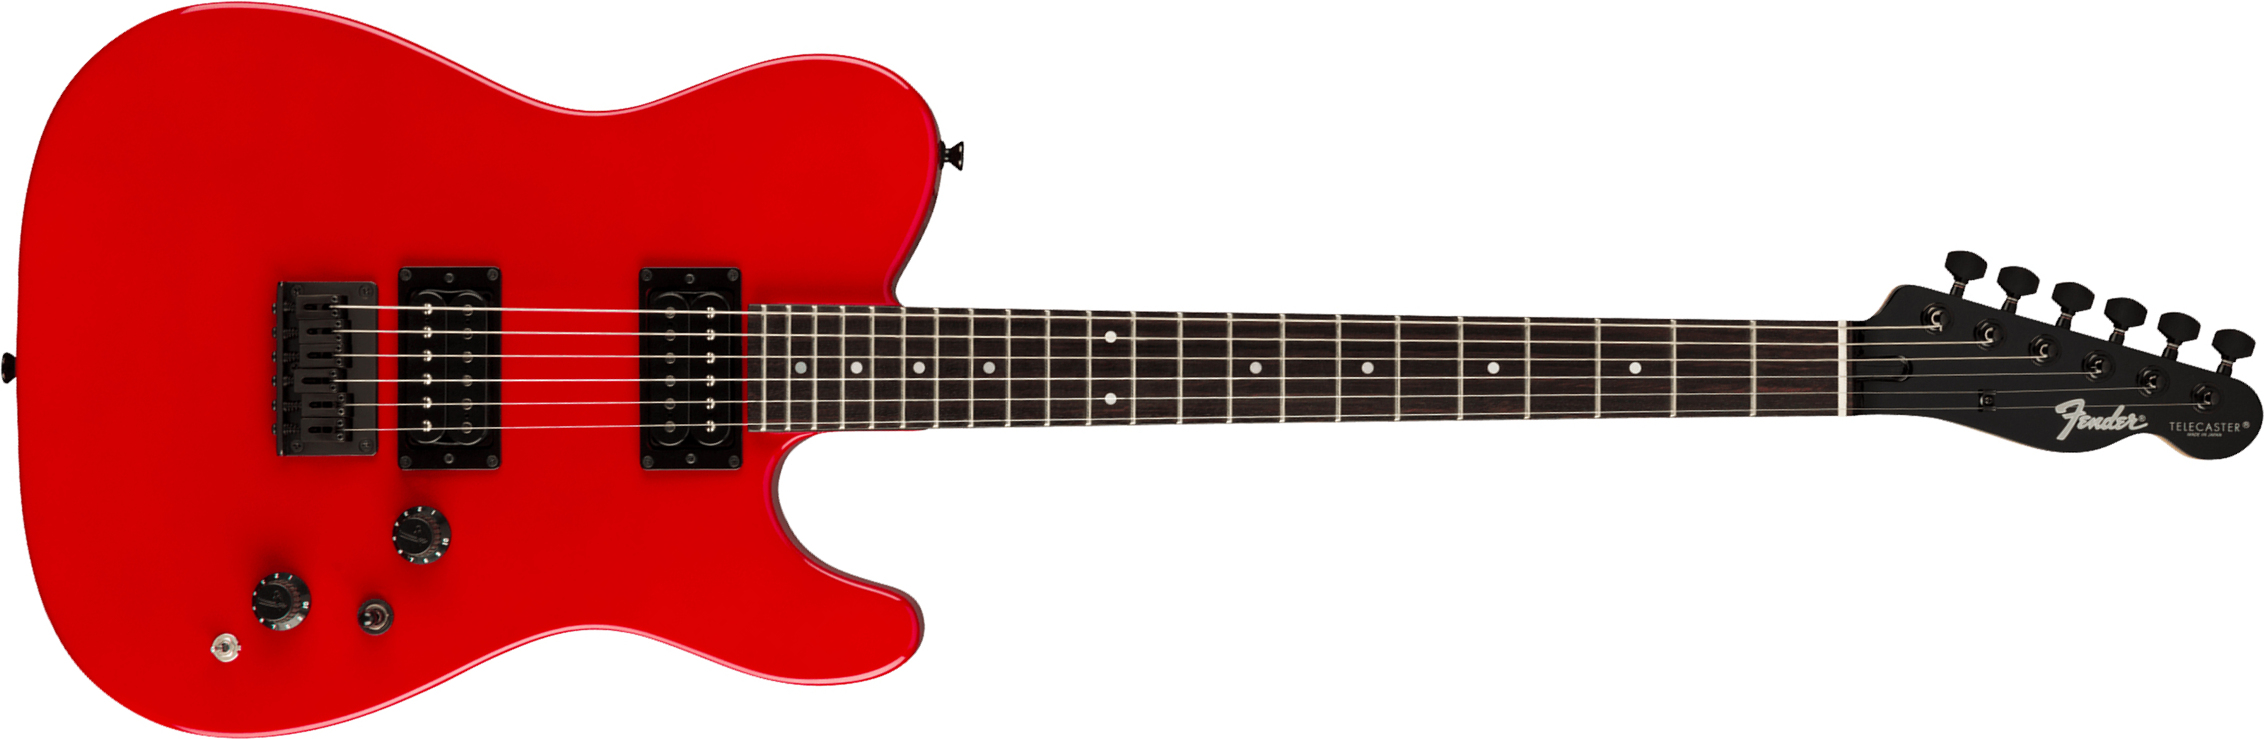 Fender Tele Boxer Hh Jap Ht Rw +housse - Torino Red - Guitarra eléctrica con forma de tel - Main picture